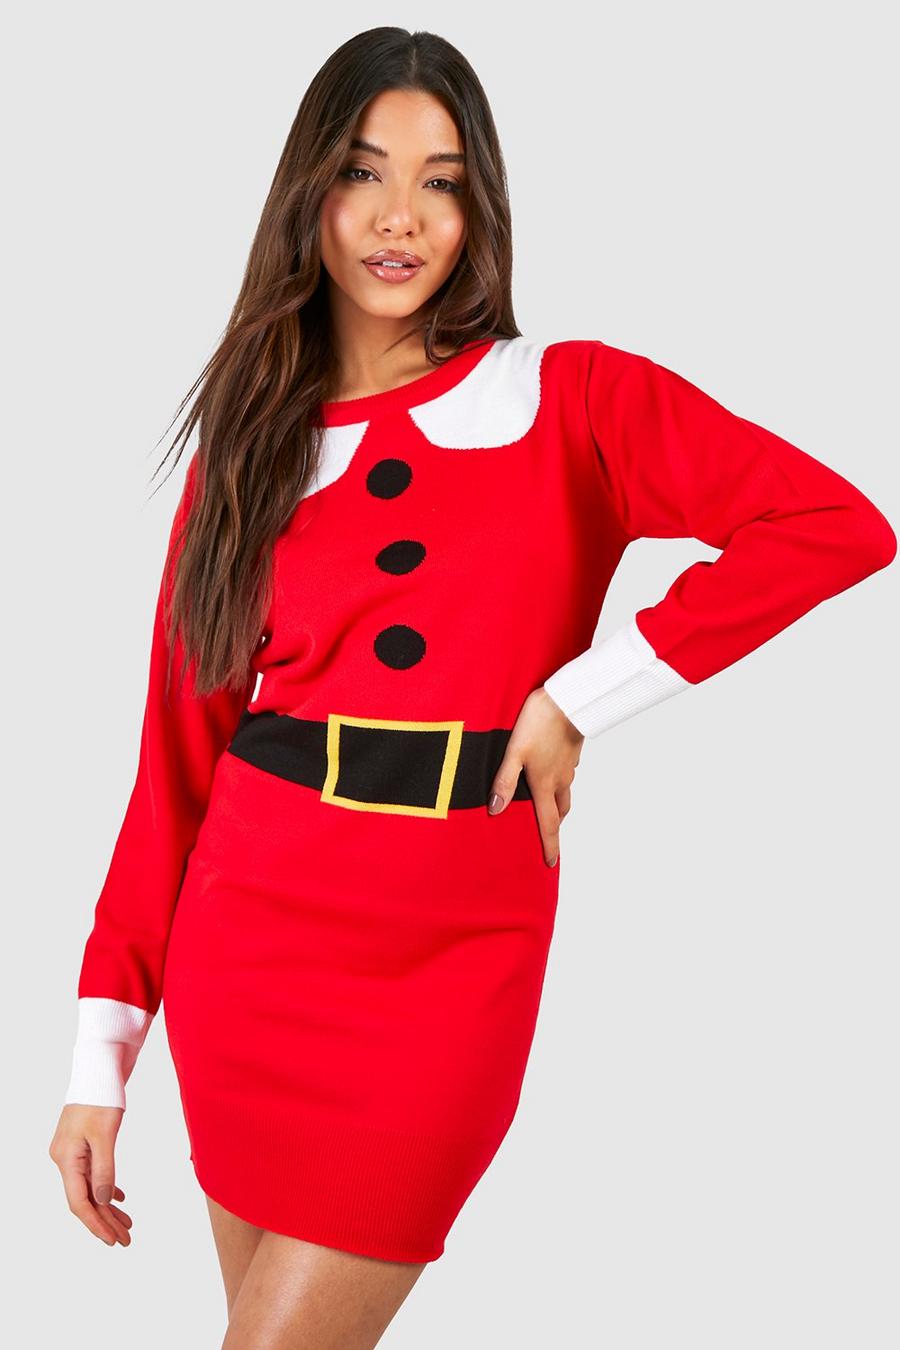 Red röd Mrs Claus Christmas Jumper Dress